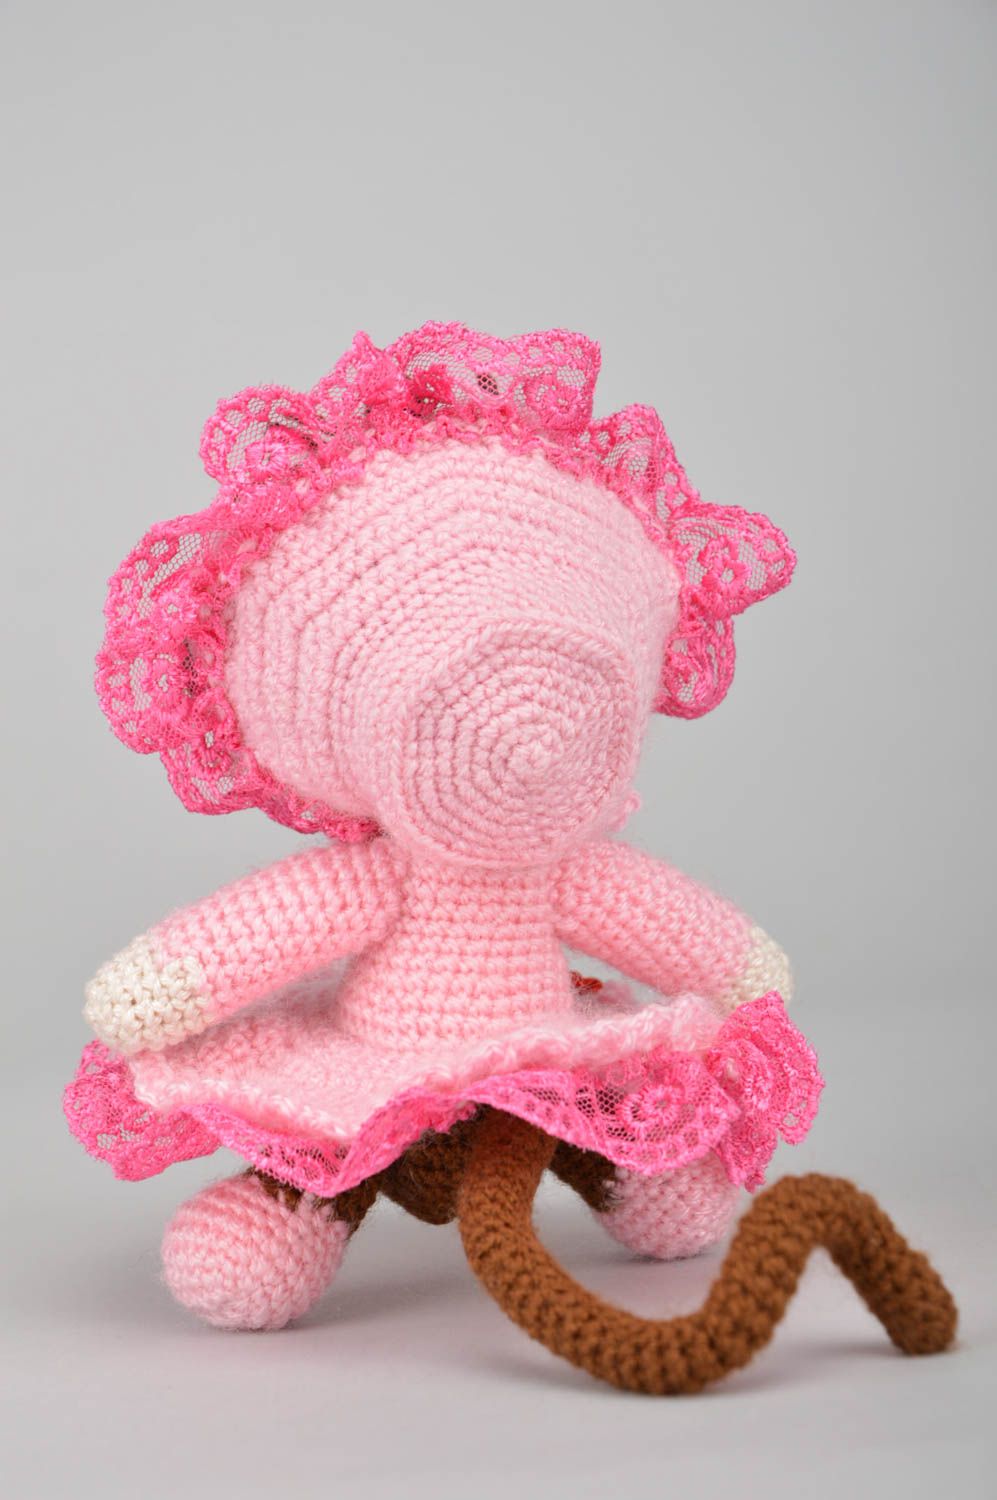 Мягкая вязаная игрушка обезьянка в розовом наряде из акриловых ниток хендмейд фото 3